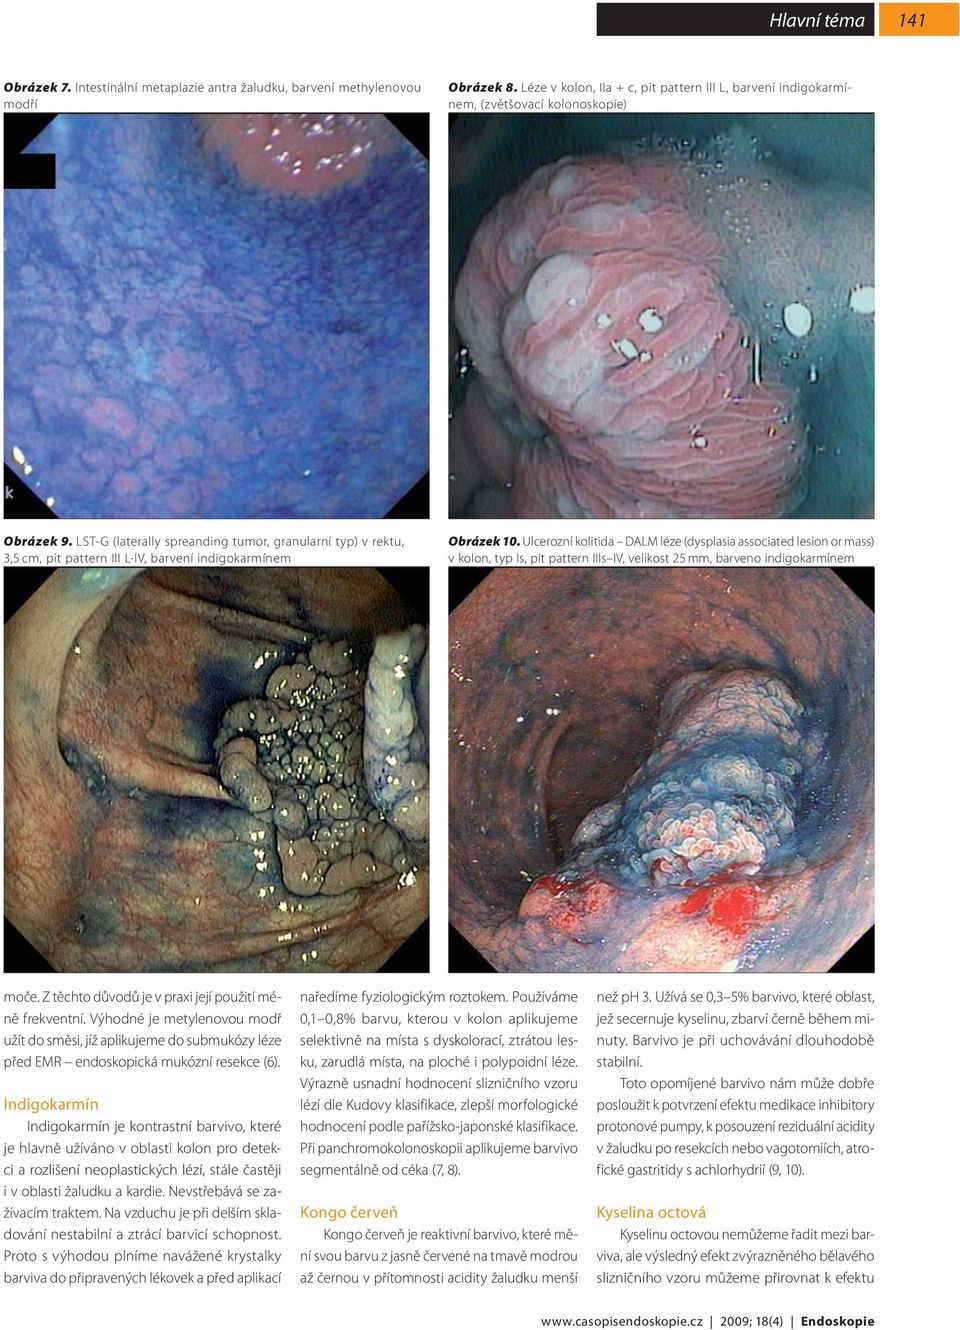 Ulcerozní kolitida DALM léze (dysplasia associated lesion or mass) v kolon, typ Is, pit pattern IIIs IV, velikost 25 mm, barveno indigokarmínem moče.